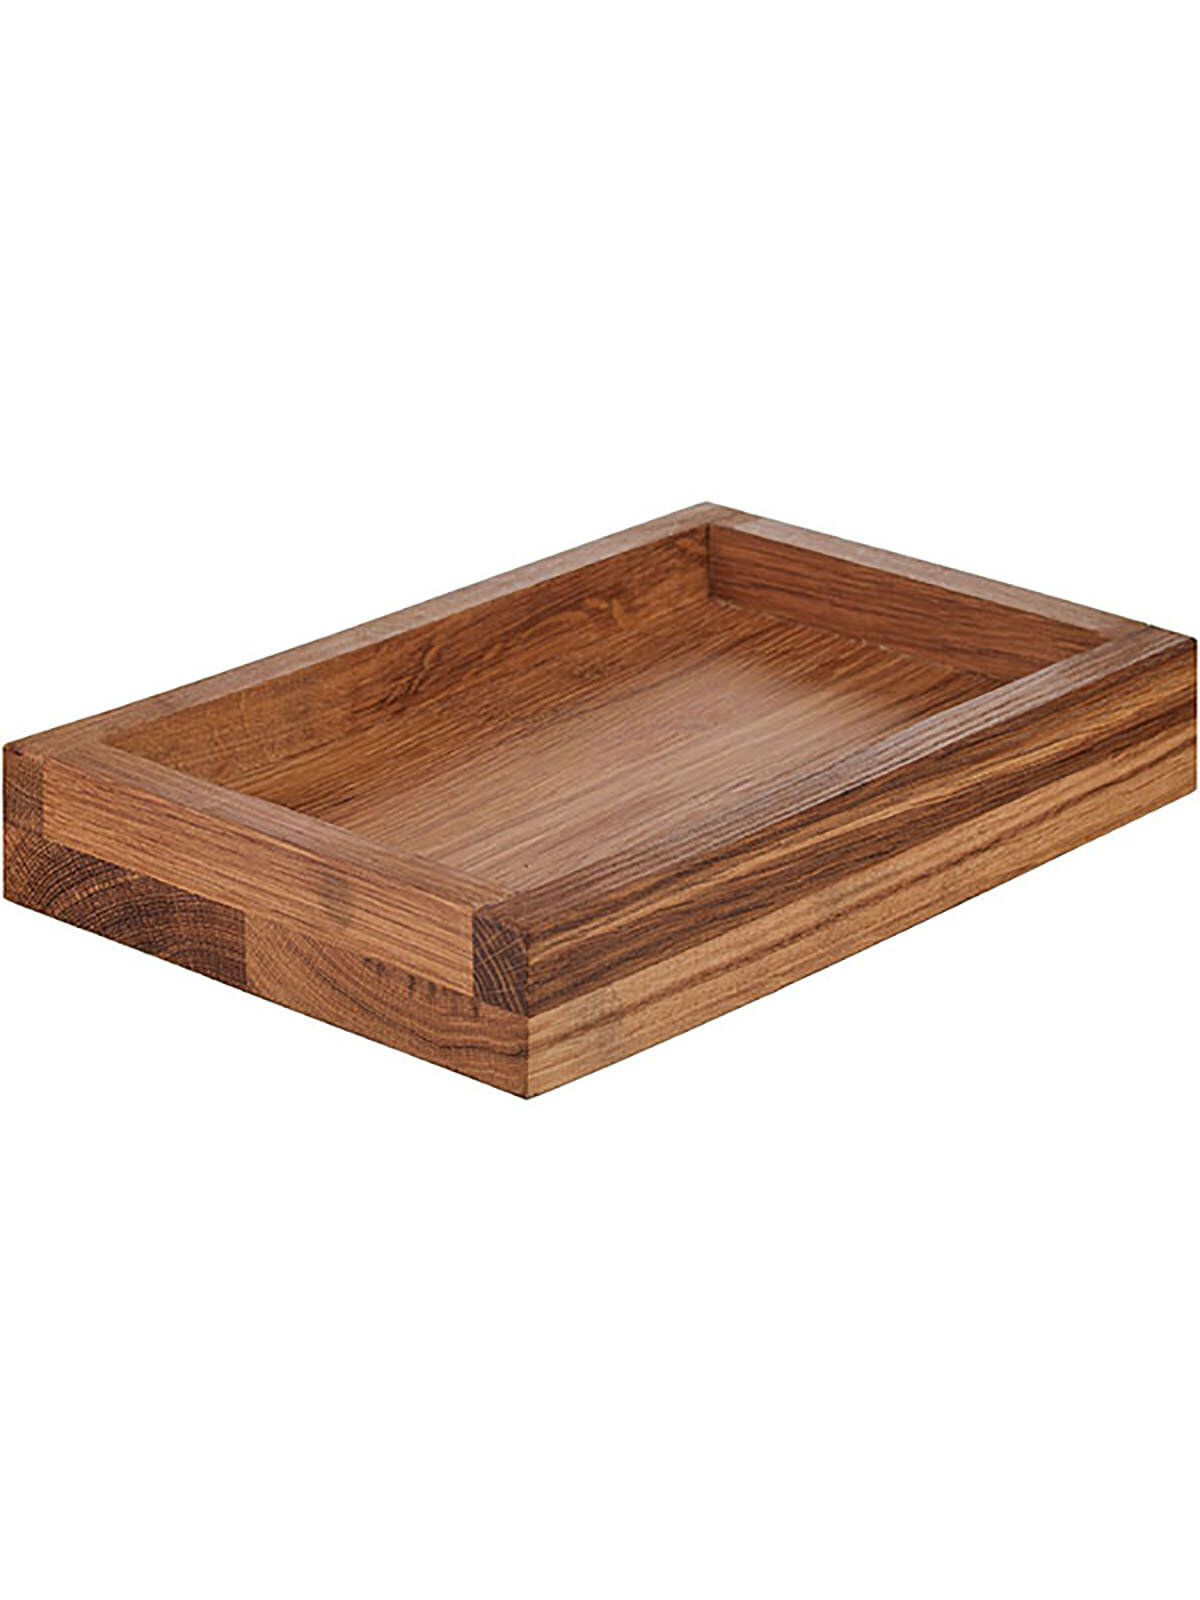 Ящик для подачи прямоугольный PPwood, деревянный, 30x20 см